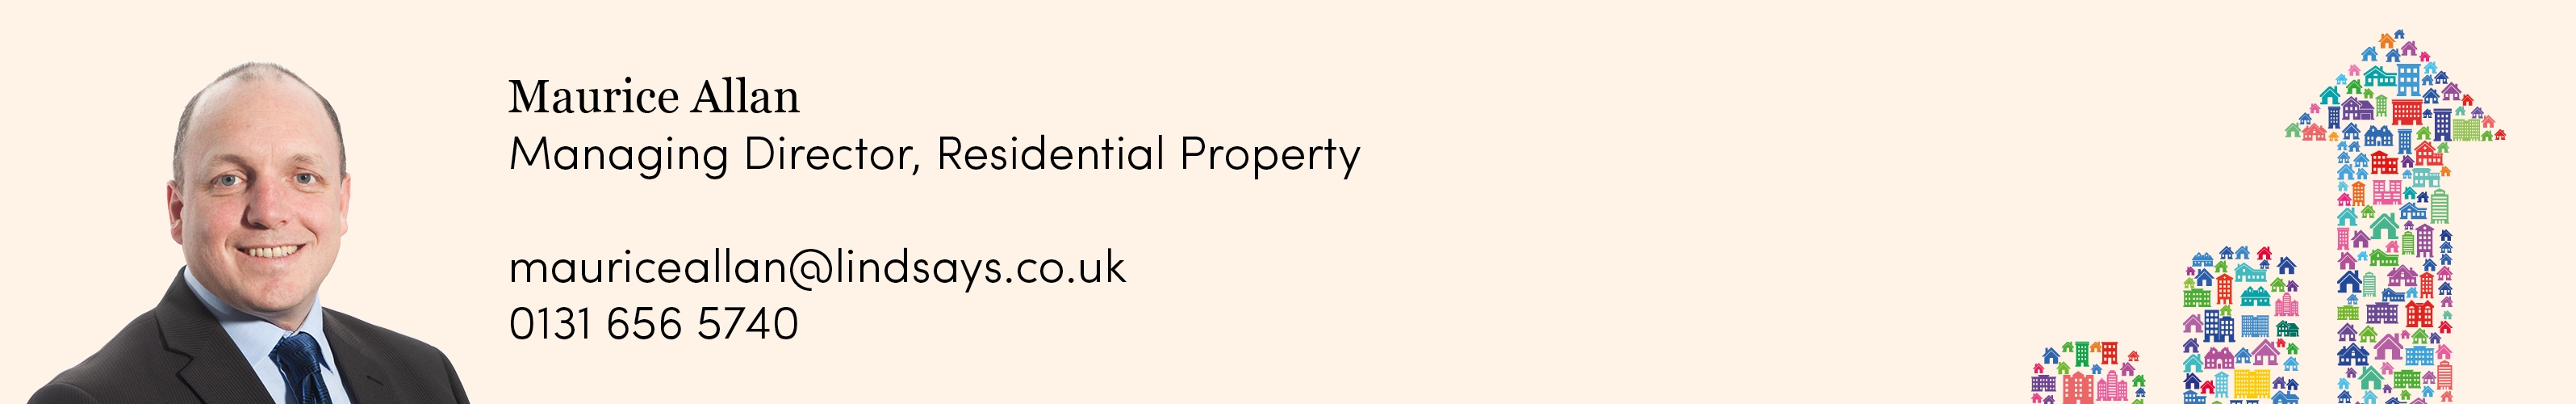 LL19-Property-panel-final.jpg#asset:12877